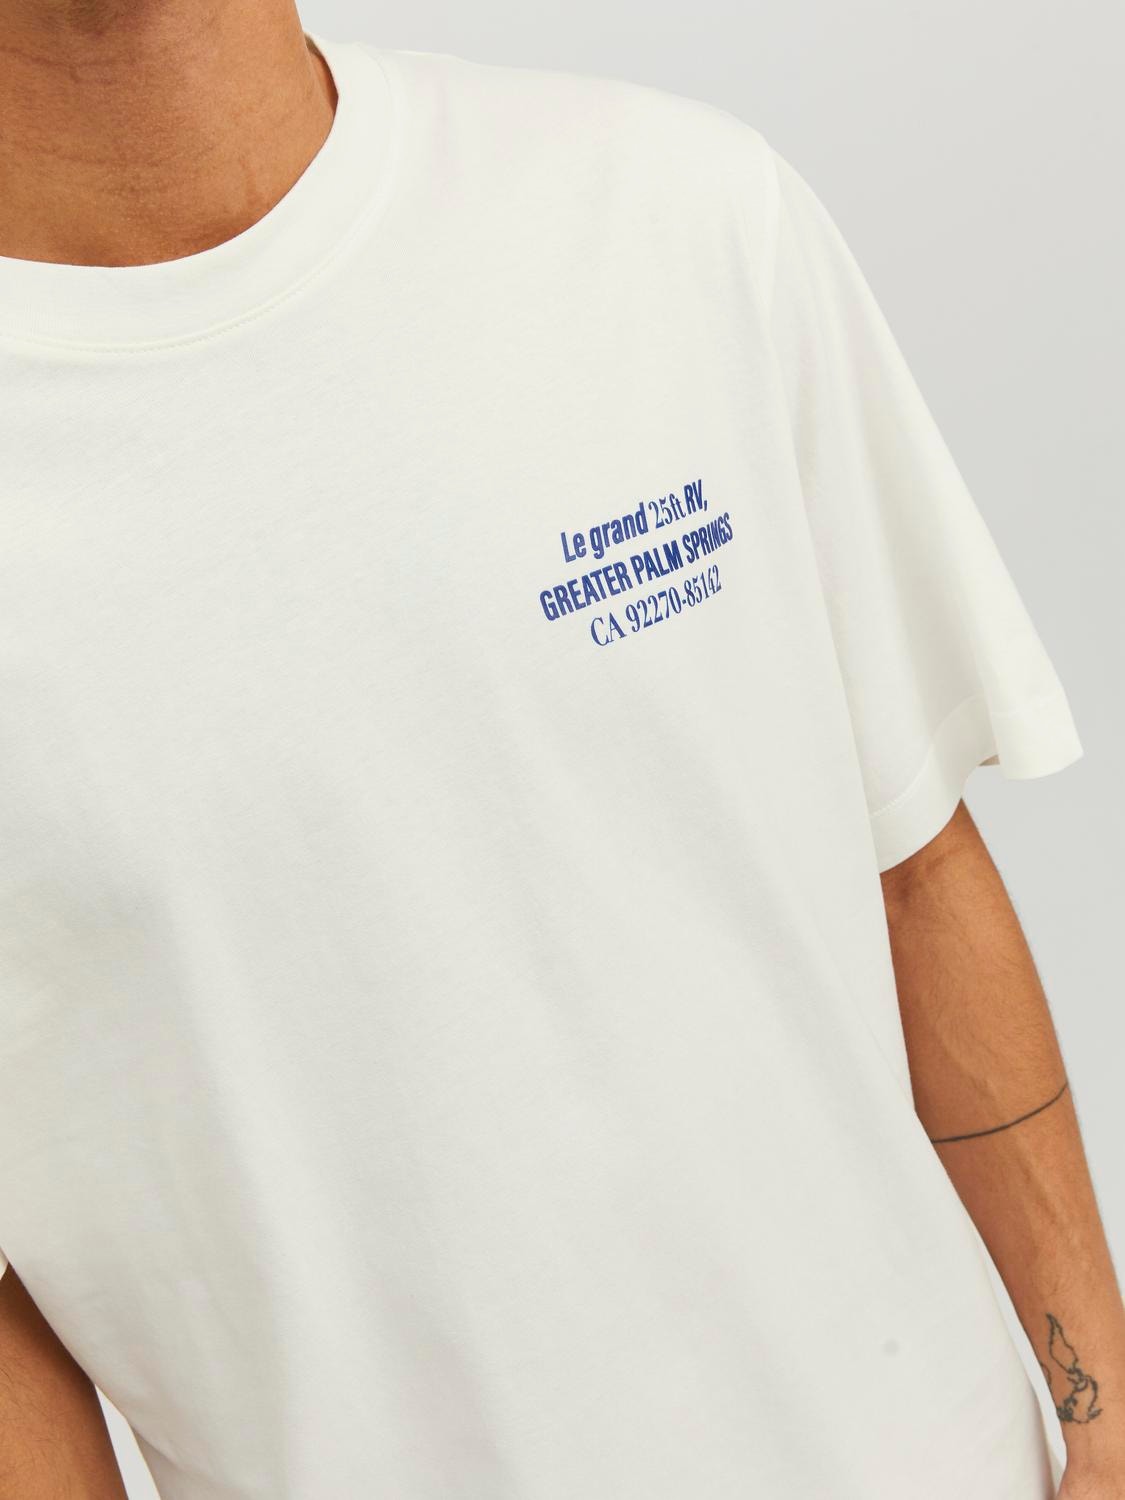 Jack & Jones Printed Crew neck T-shirt -Cloud Dancer - 12230006